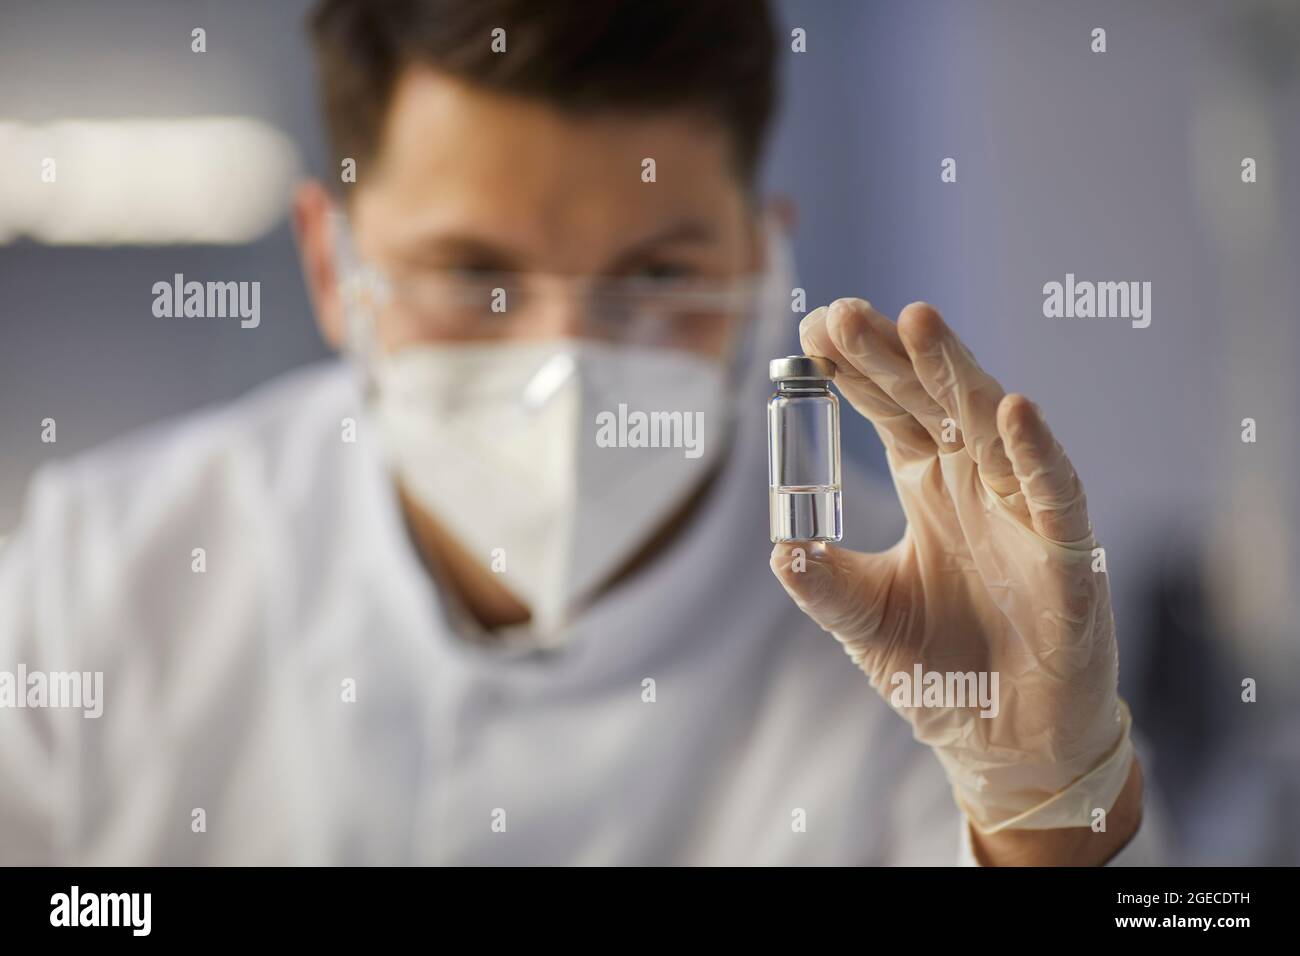 Glasampulle mit einer klaren Flüssigkeit in den Händen eines männlichen Arztes oder Laborassistenten. Stockfoto